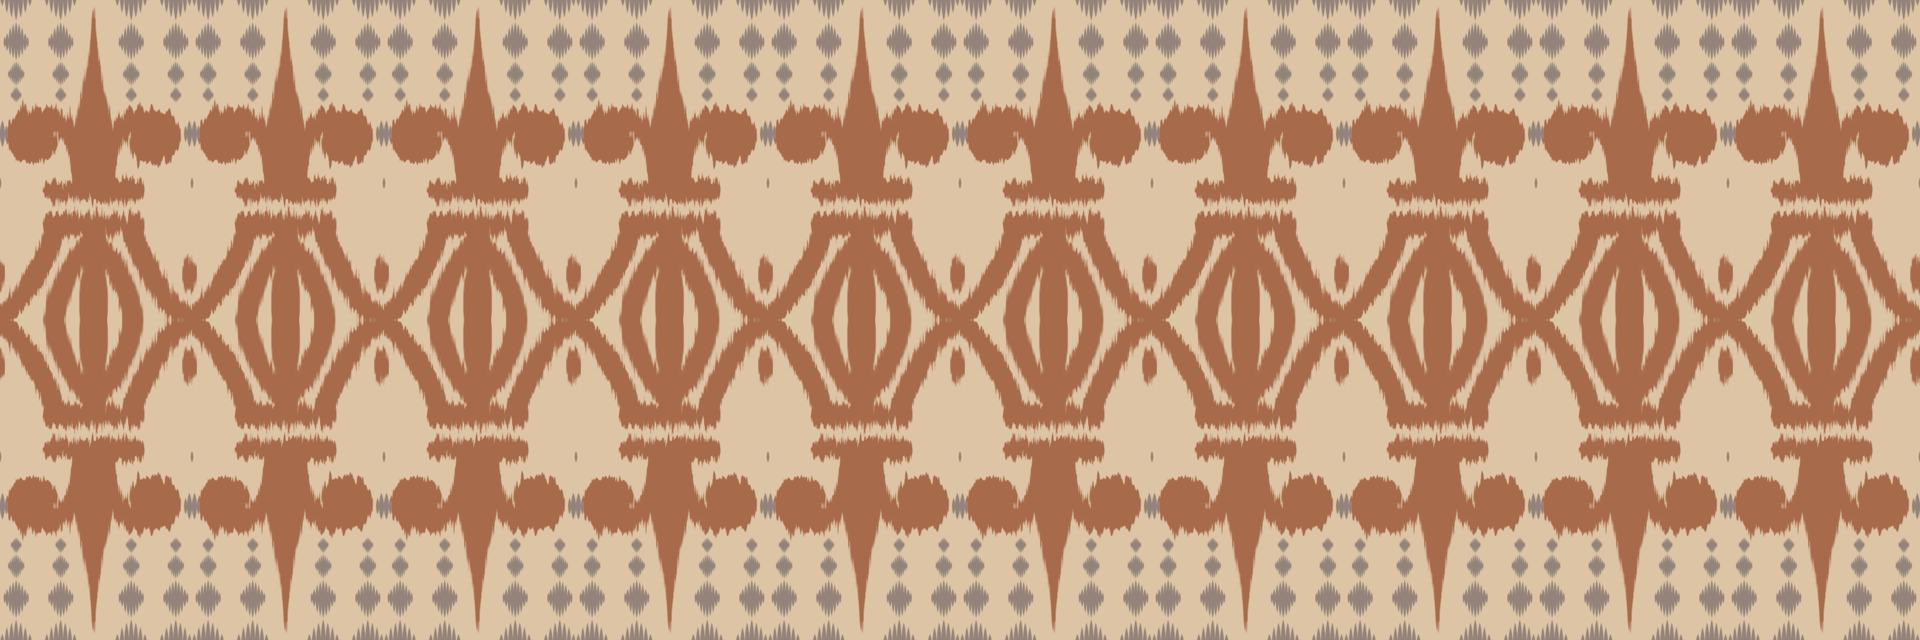 Ikat fabric tribal abstract Seamless Pattern. Ethnic Geometric Batik Ikkat Digital vector textile Design for Prints Fabric saree Mughal brush symbol Swaths texture Kurti Kurtis Kurtas